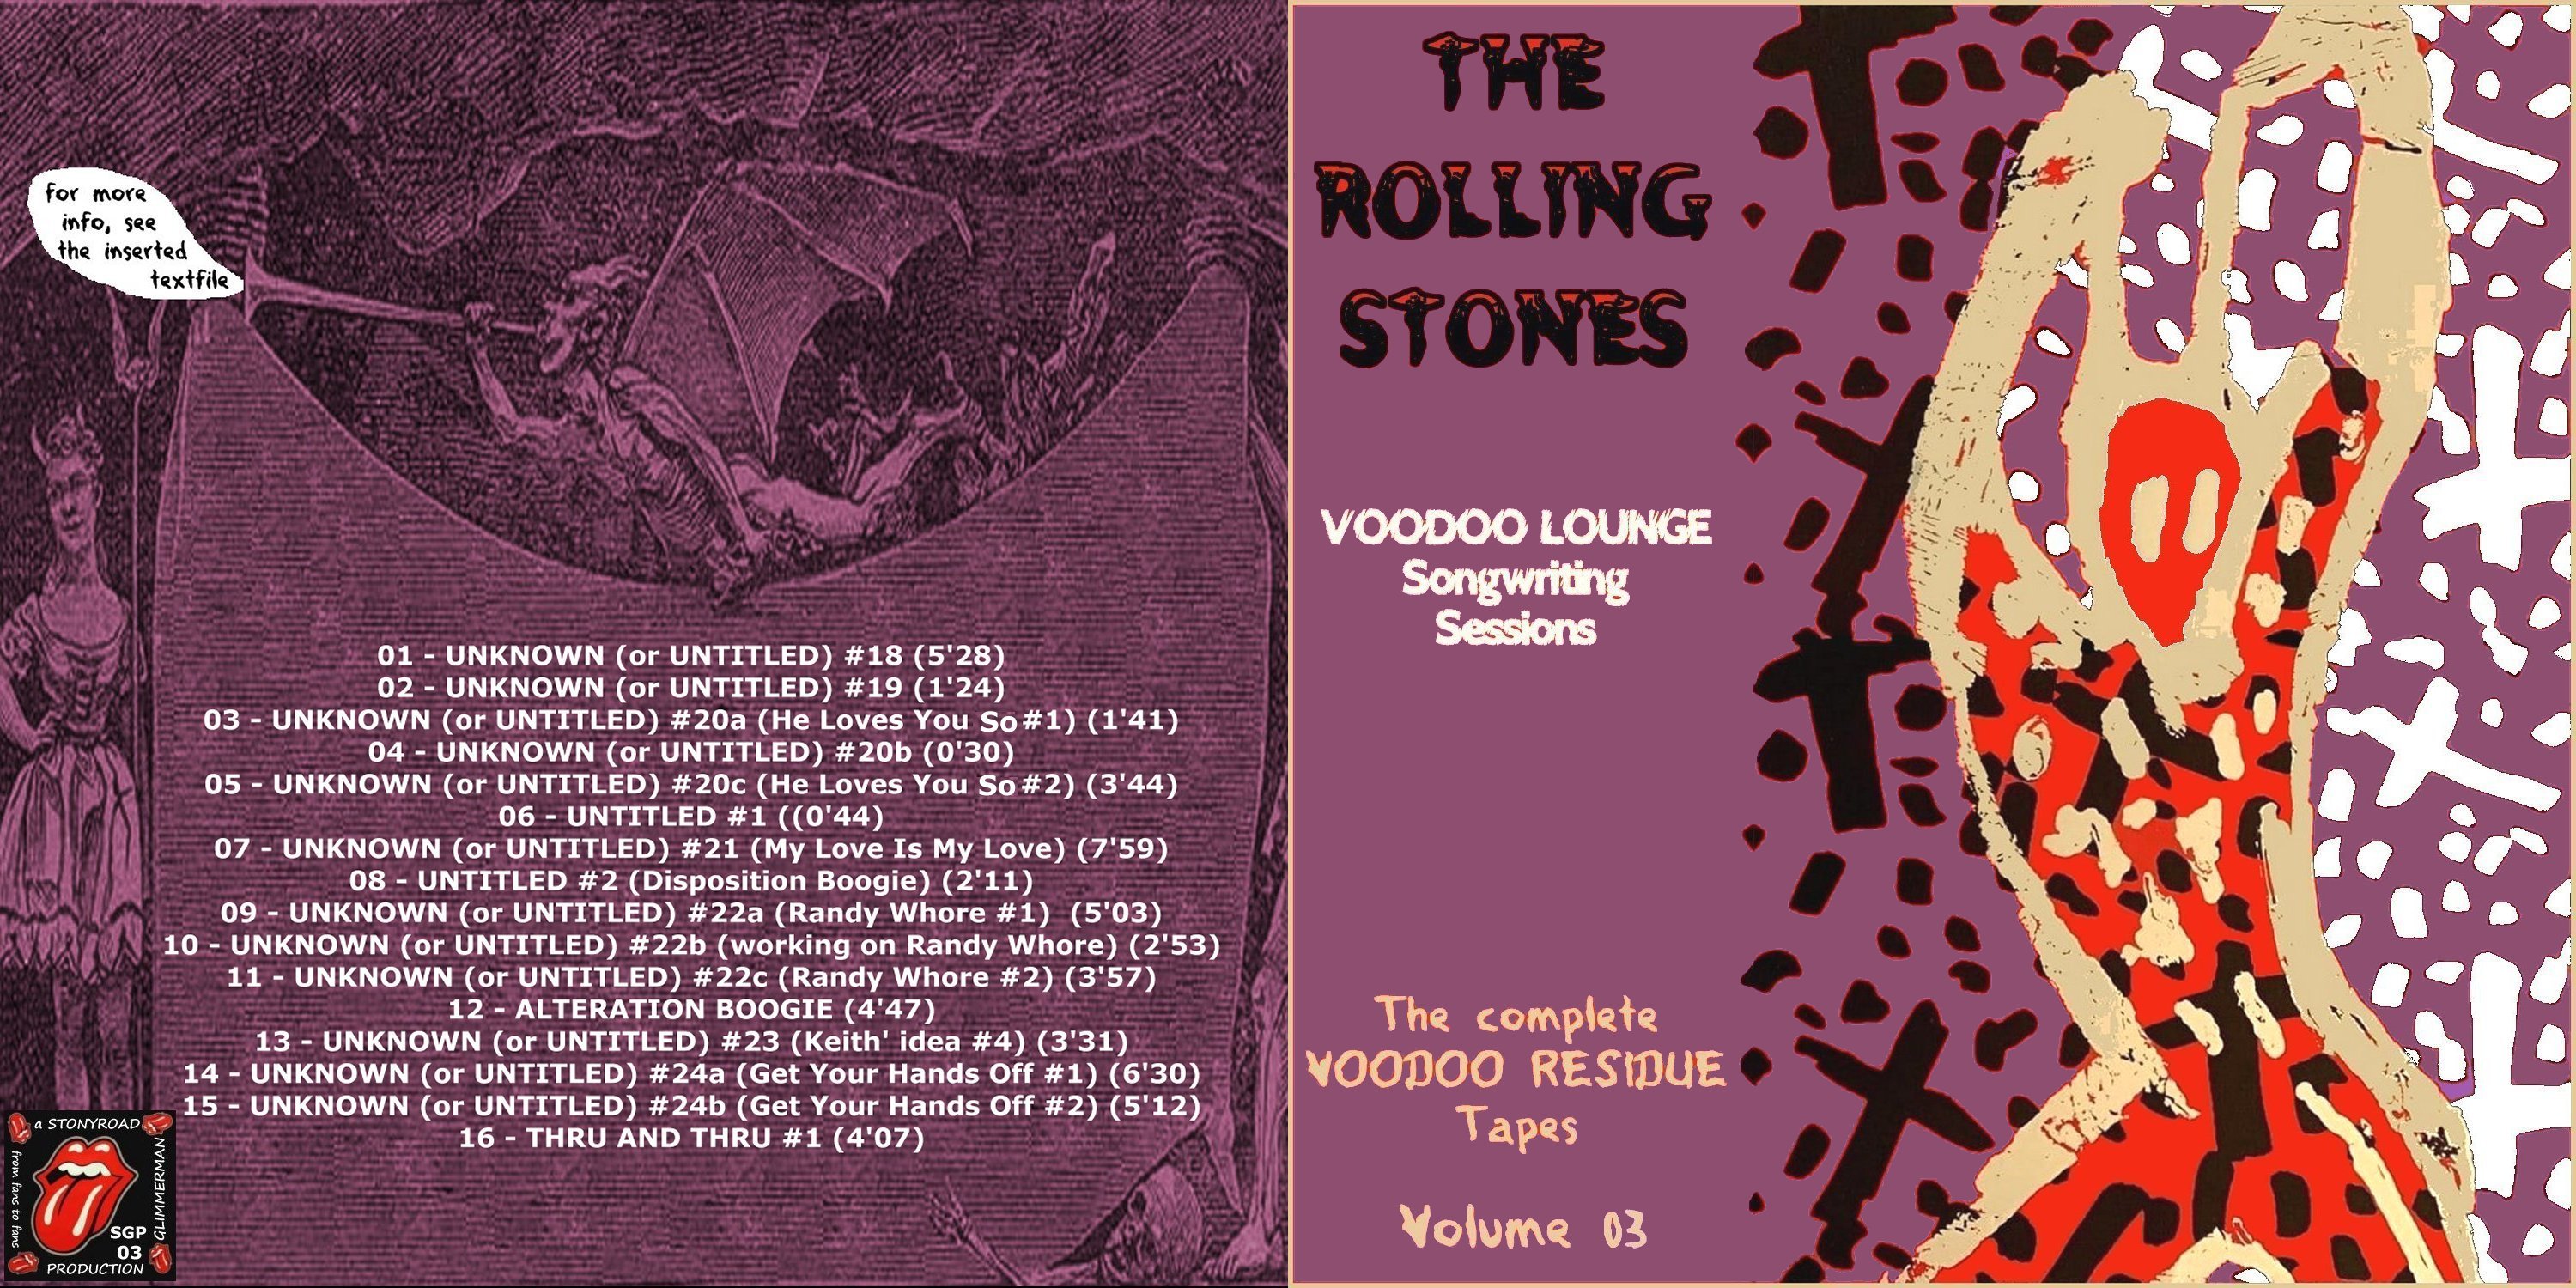 RollingStones1993-05-20Vol03VoodoLoungeSongwritingSessions (1).jpg